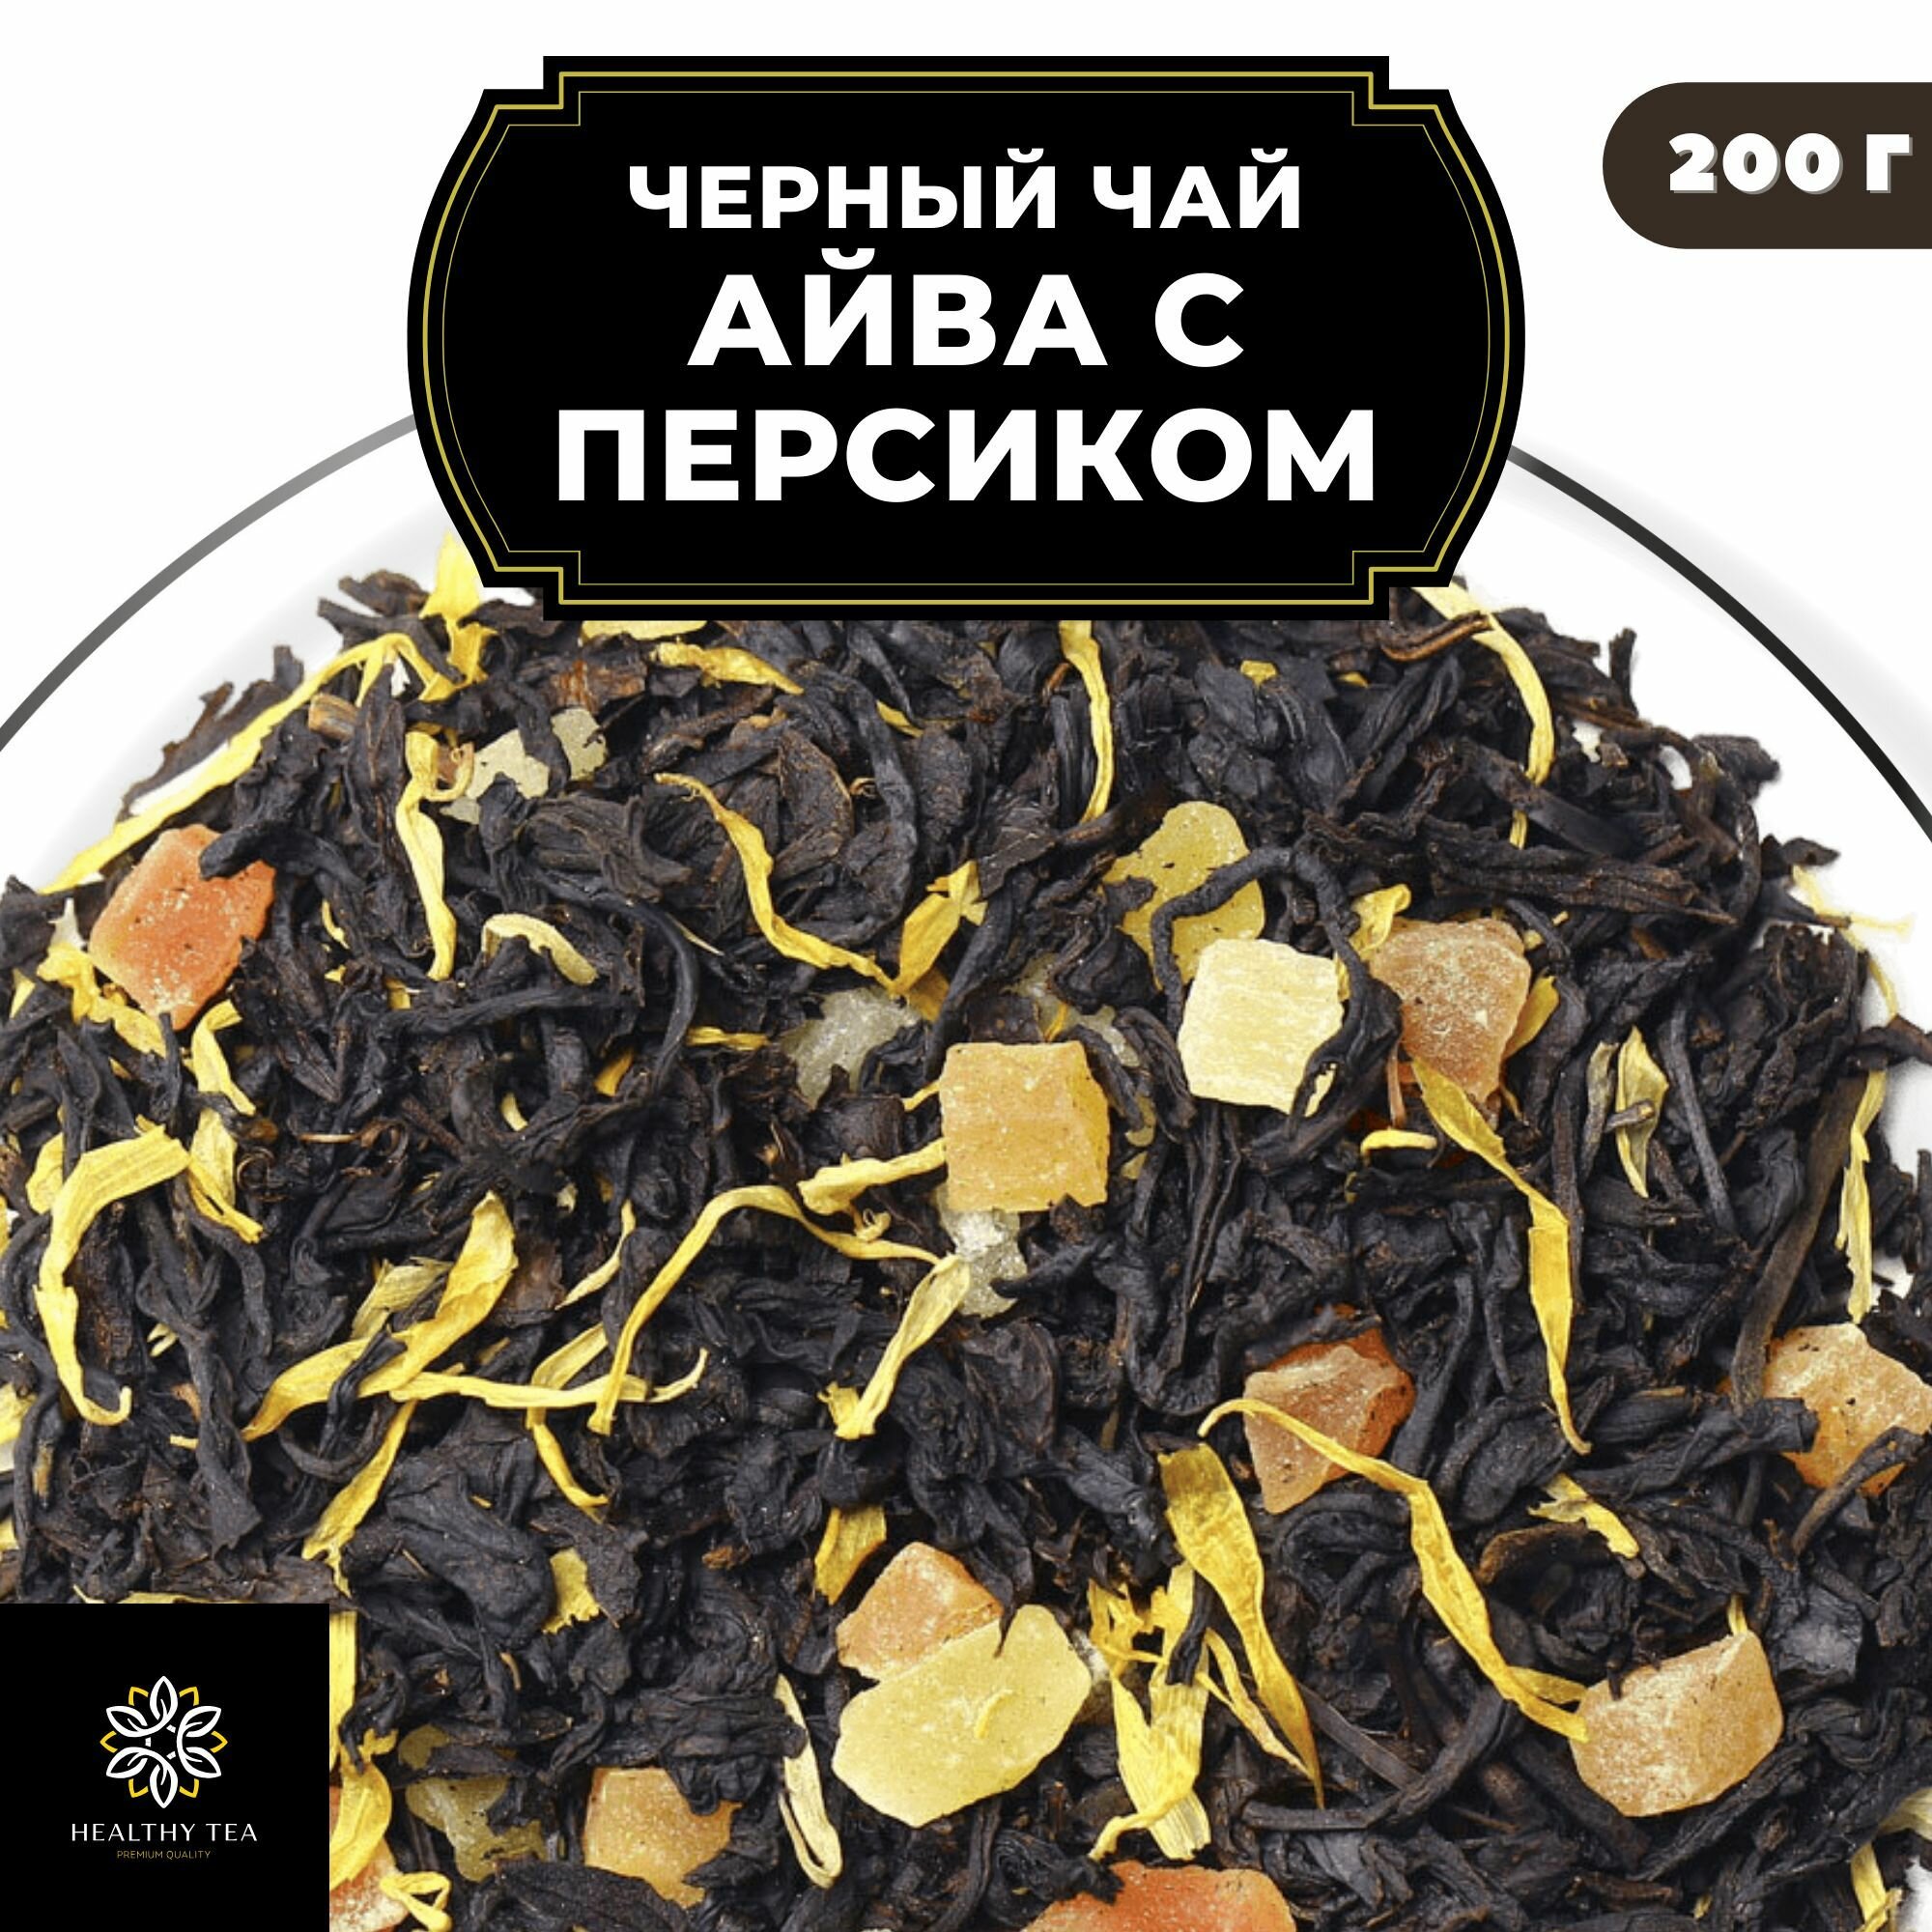 Индийский Черный чай с папайей, ананасом и календулой "Айва с персиком" Полезный чай / HEALTHY TEA, 200 гр